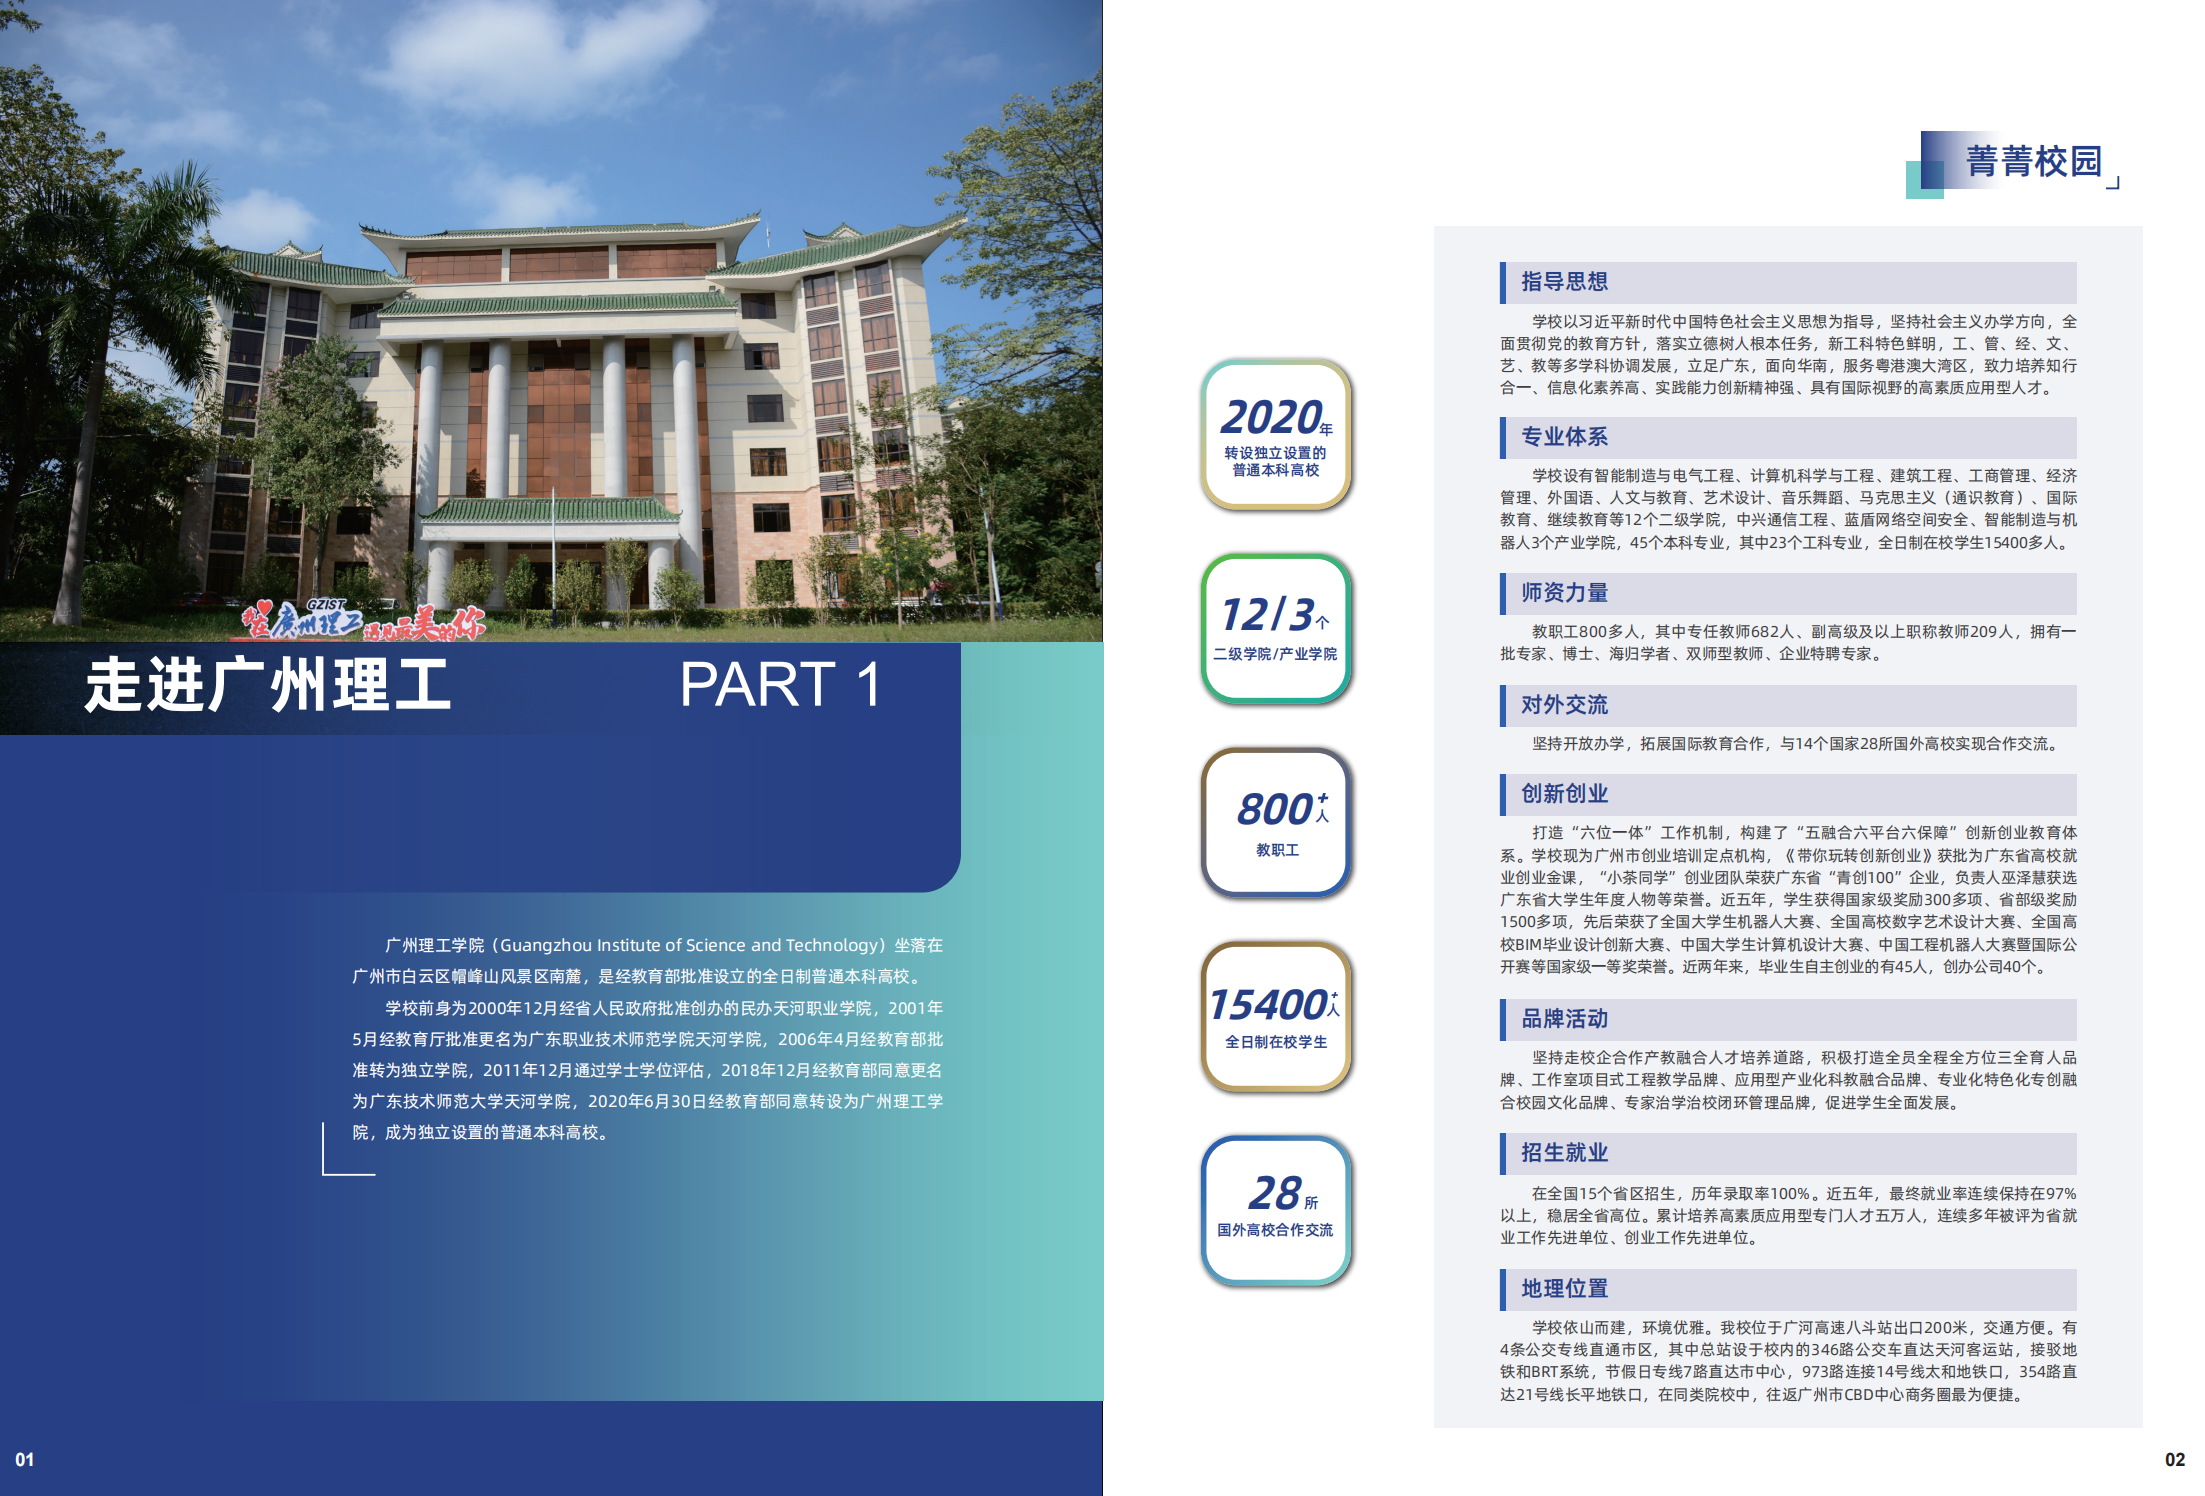 2022广州理工学院招生简章（最终版）